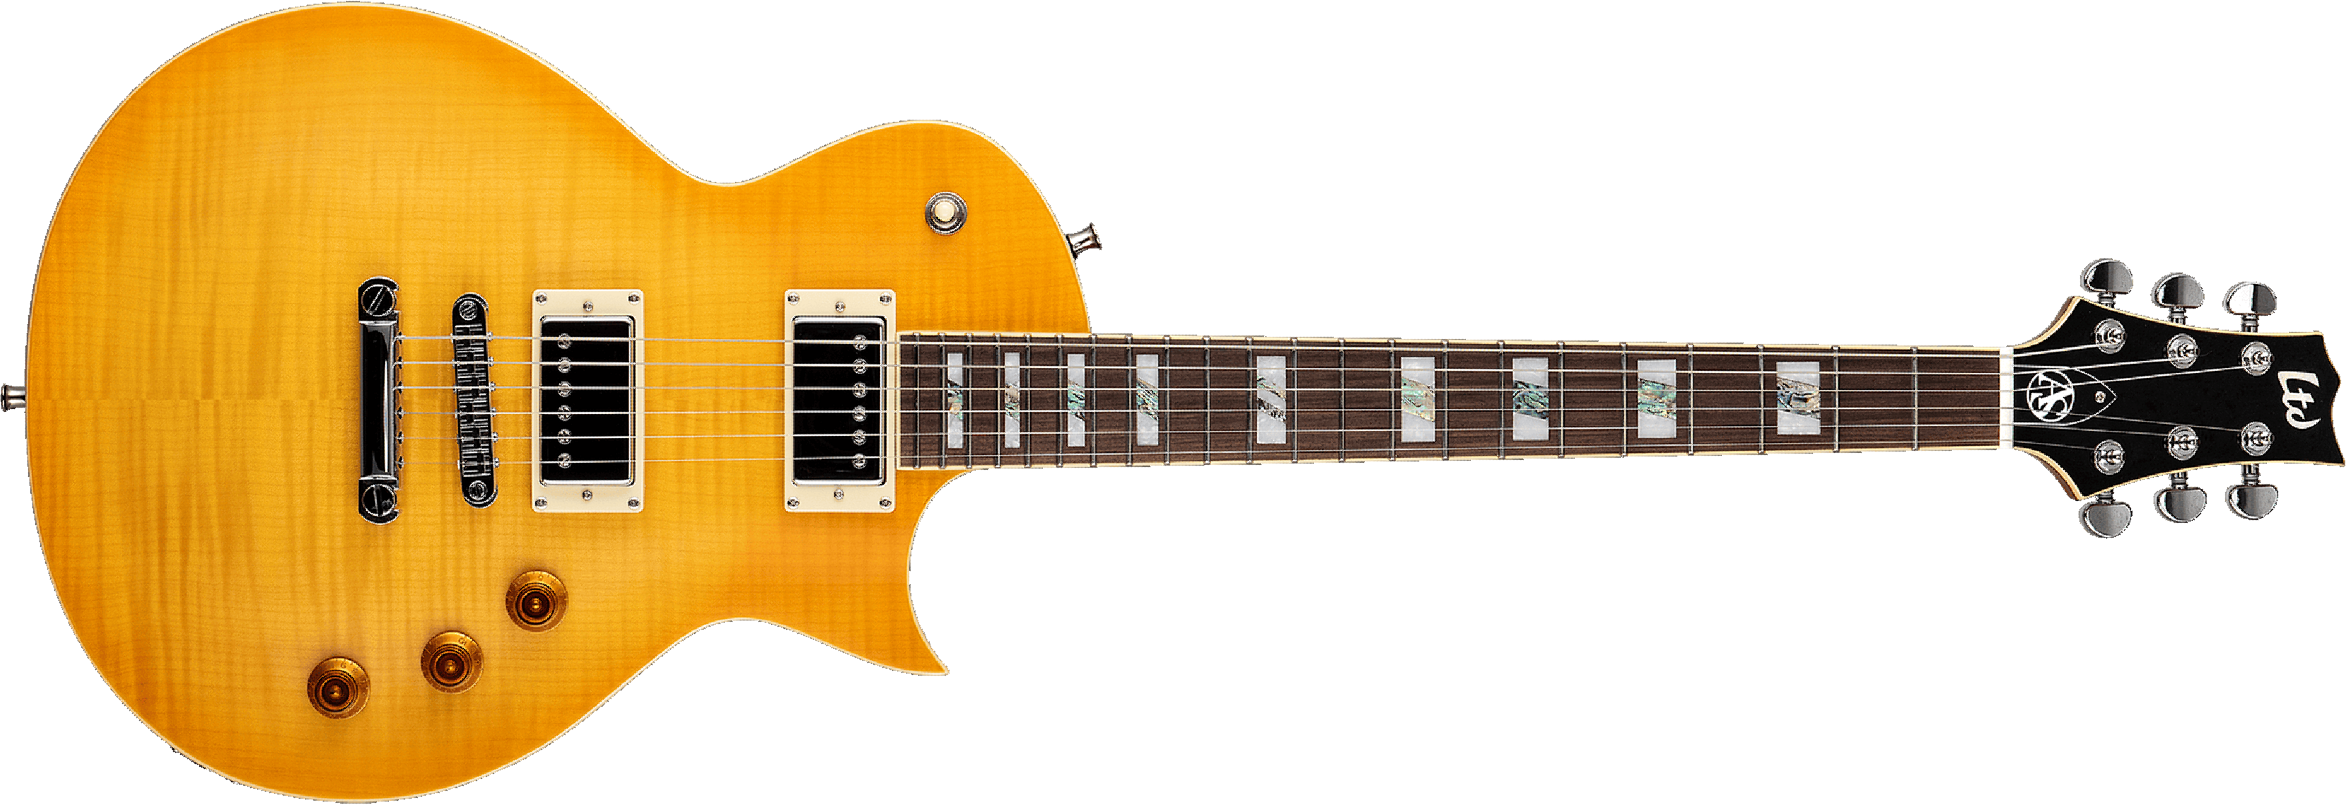 Ltd As1fm Alex Skolnick Signature Ht Hh Pf - Lemon Burst - Single cut electric guitar - Main picture